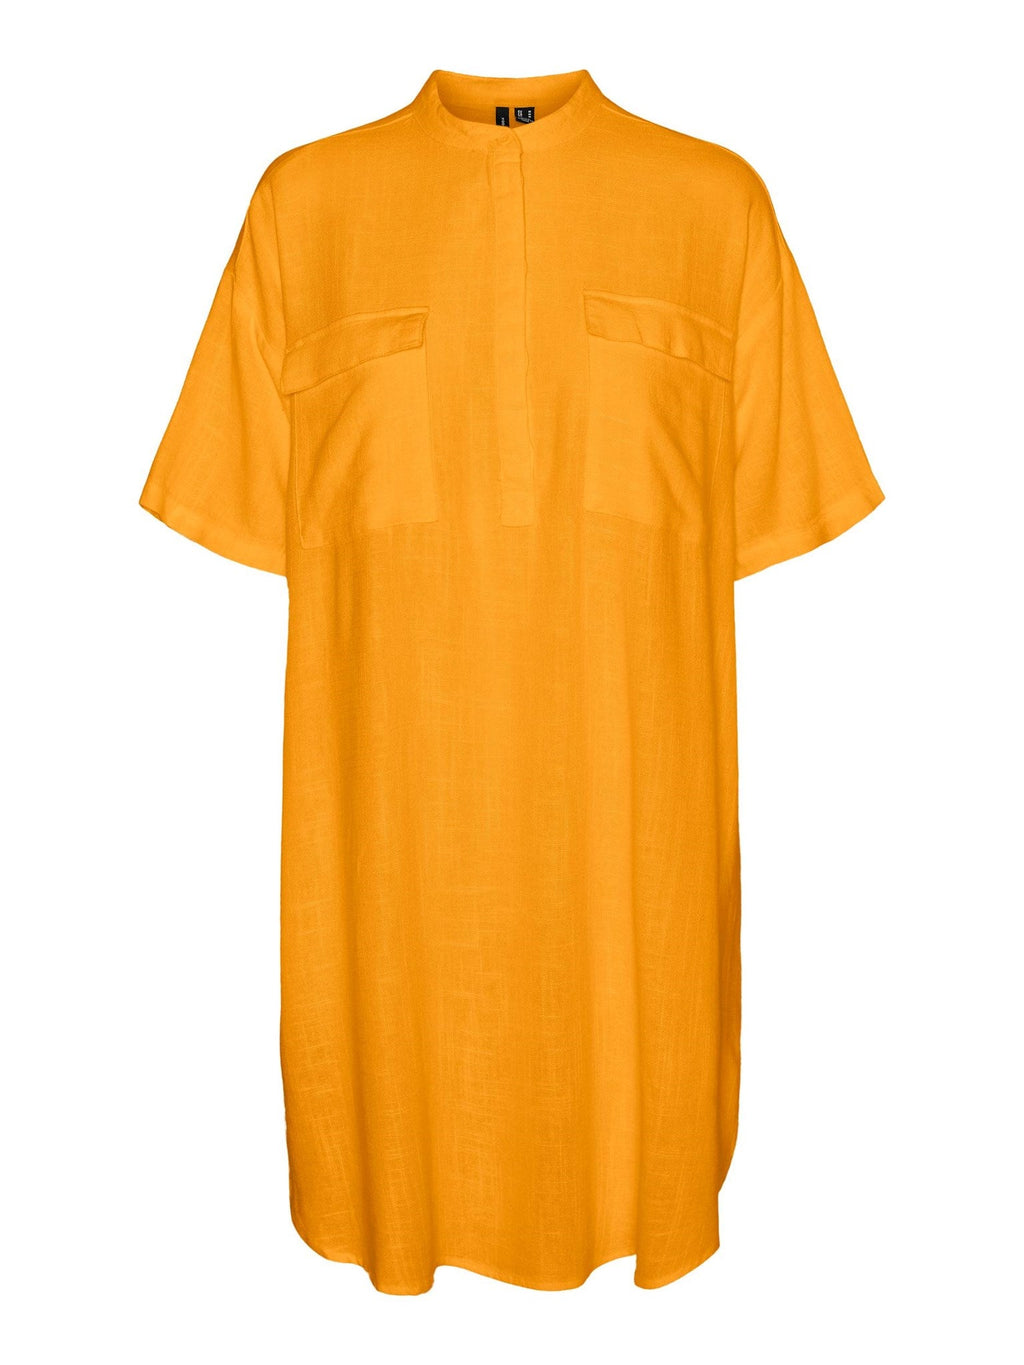 Μίνι φόρεμα γραμμής - ακτινοβόλο κίτρινο